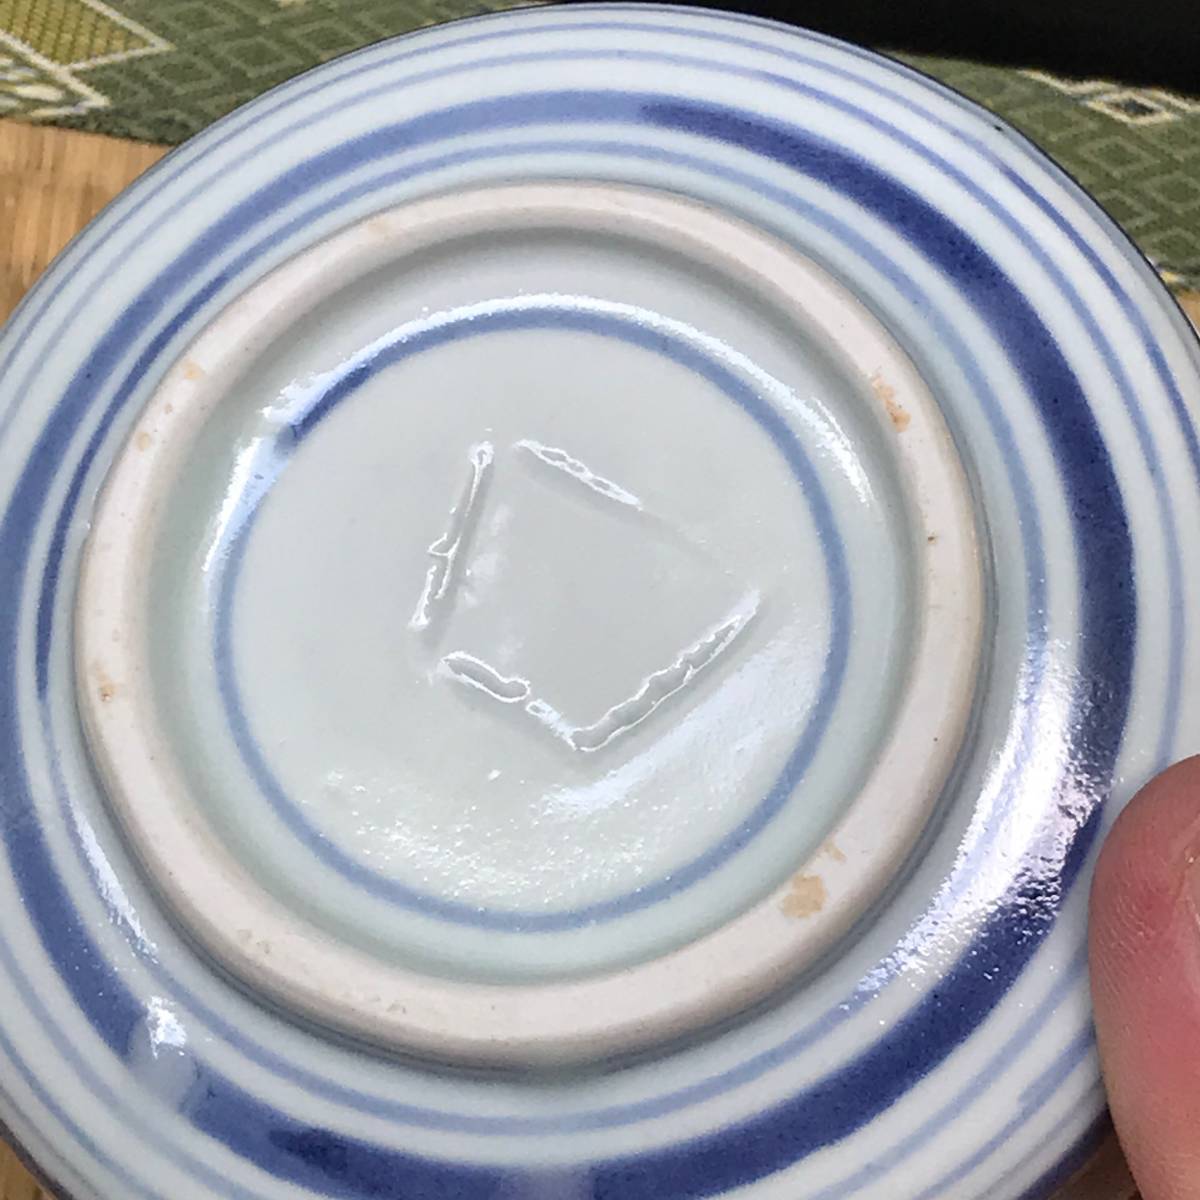  Imari width ... censer? ashtray?(.). mountain person . seal? small plate, small bowl delicacy inserting blue and white ceramics old Imari (R50726_A)